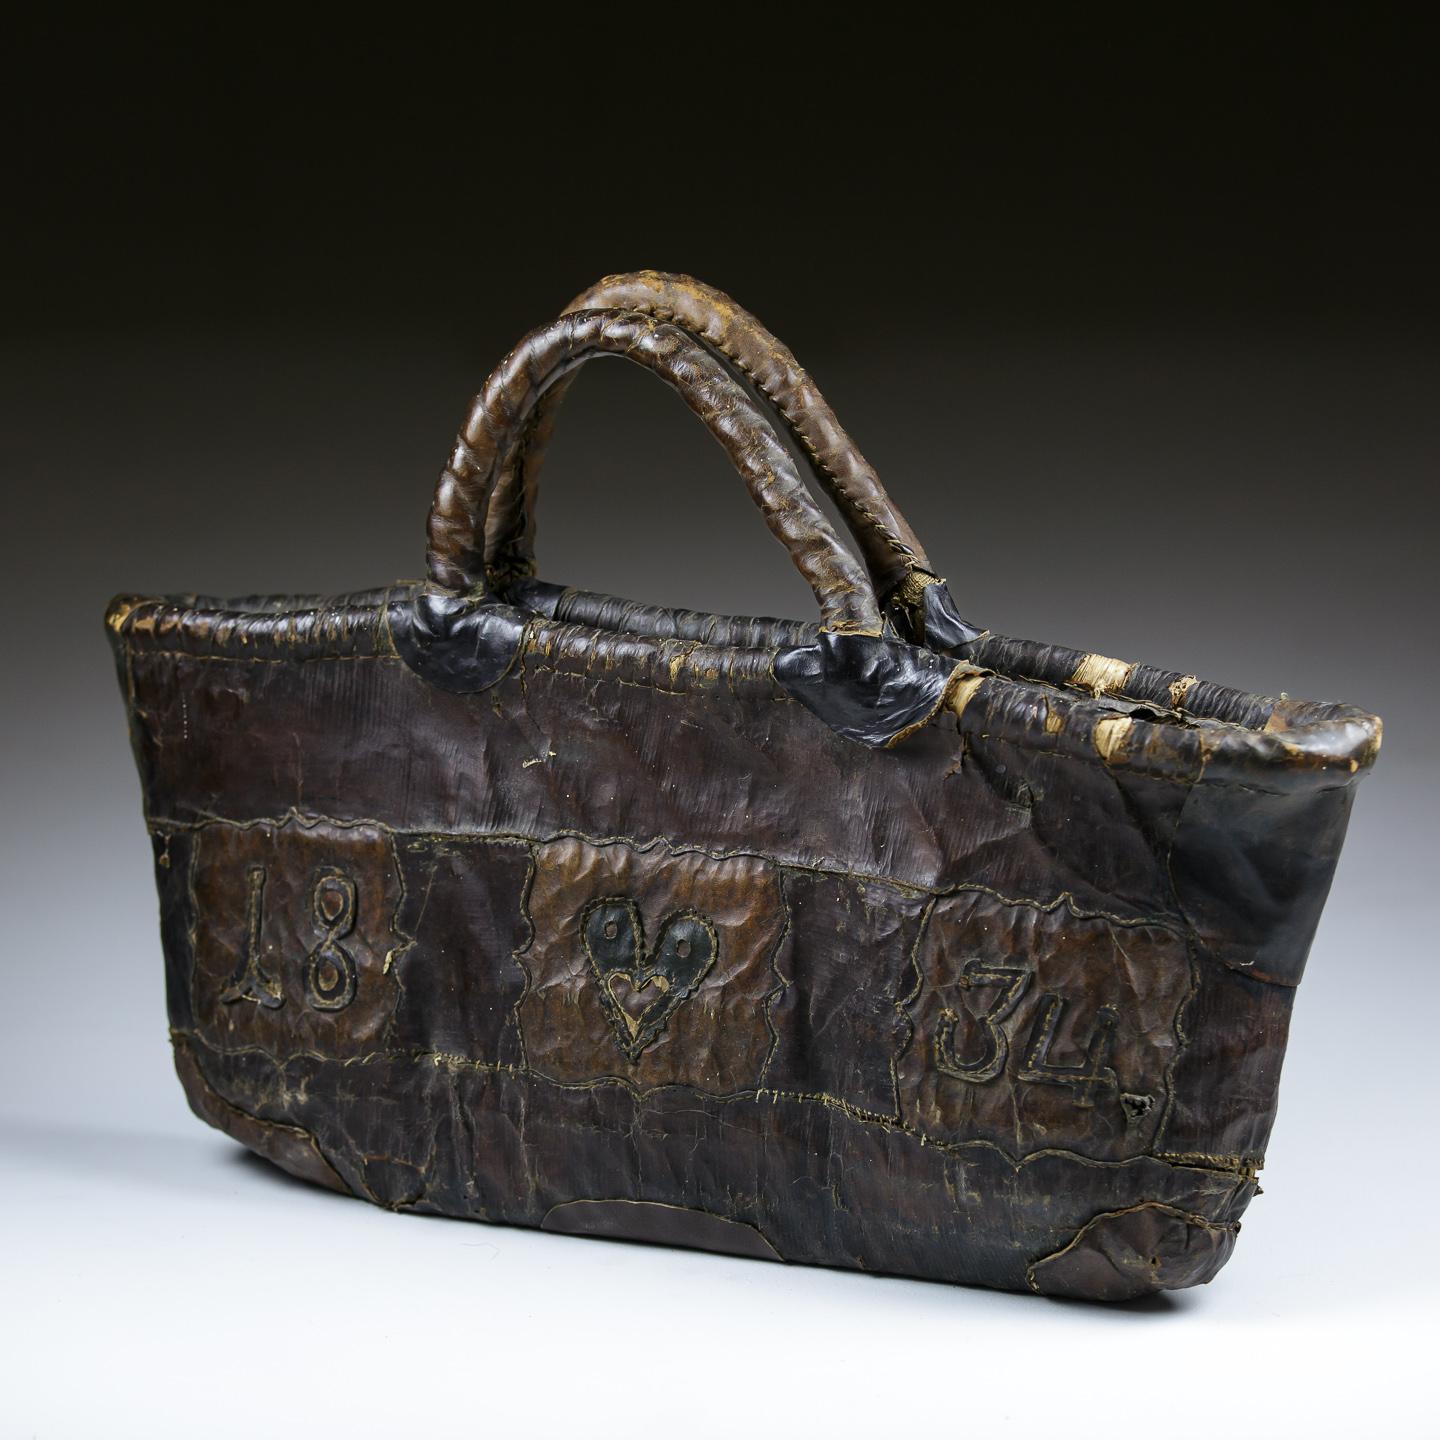 Außergewöhnliche Damenhandtasche aus Leder Love Token, gewebtes Binsenfutter mit appliziertem Leder, zur Herstellung und Verzierung eines Liebesherzens und eines Datums. Mehrere funktionierende Lederreparaturen. Niederlande 1834.